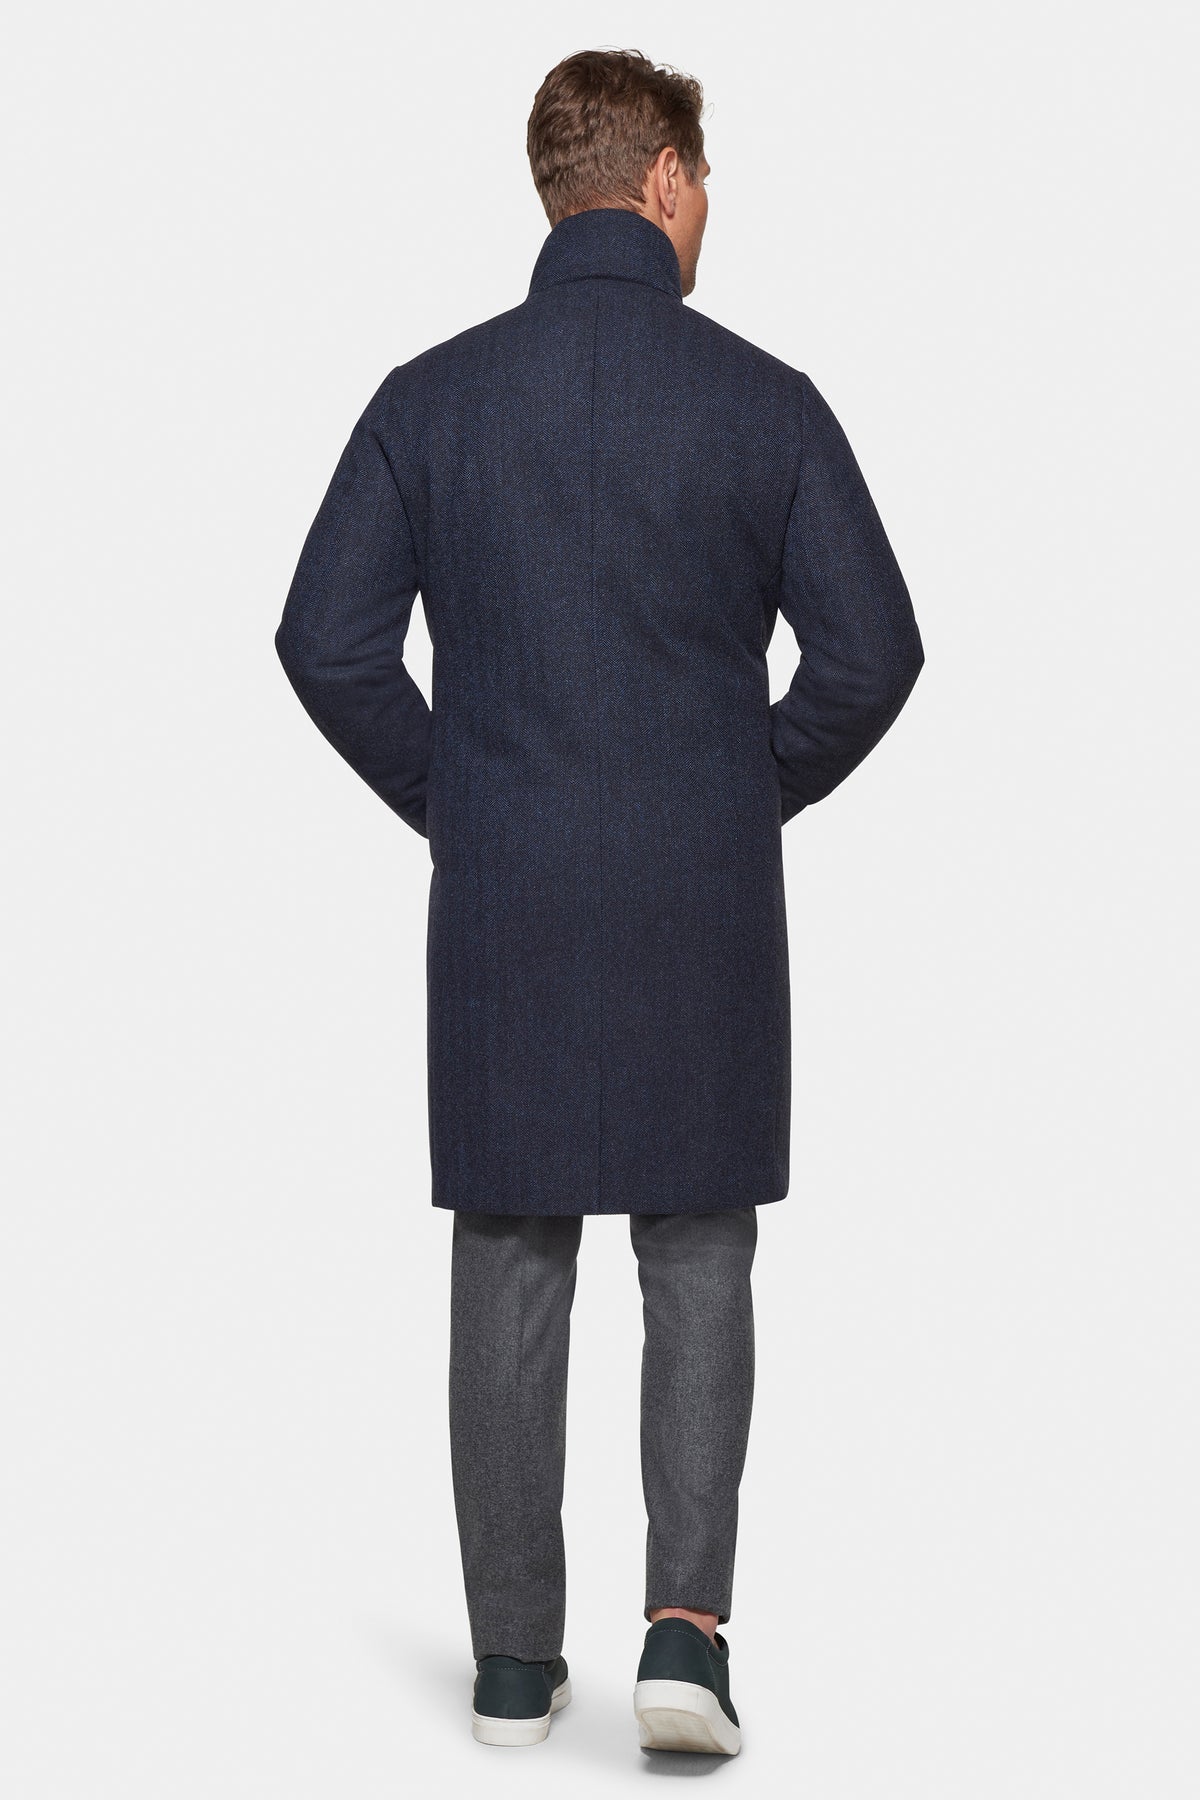 Cashmere Wool Topcoat British Blue Herringbone